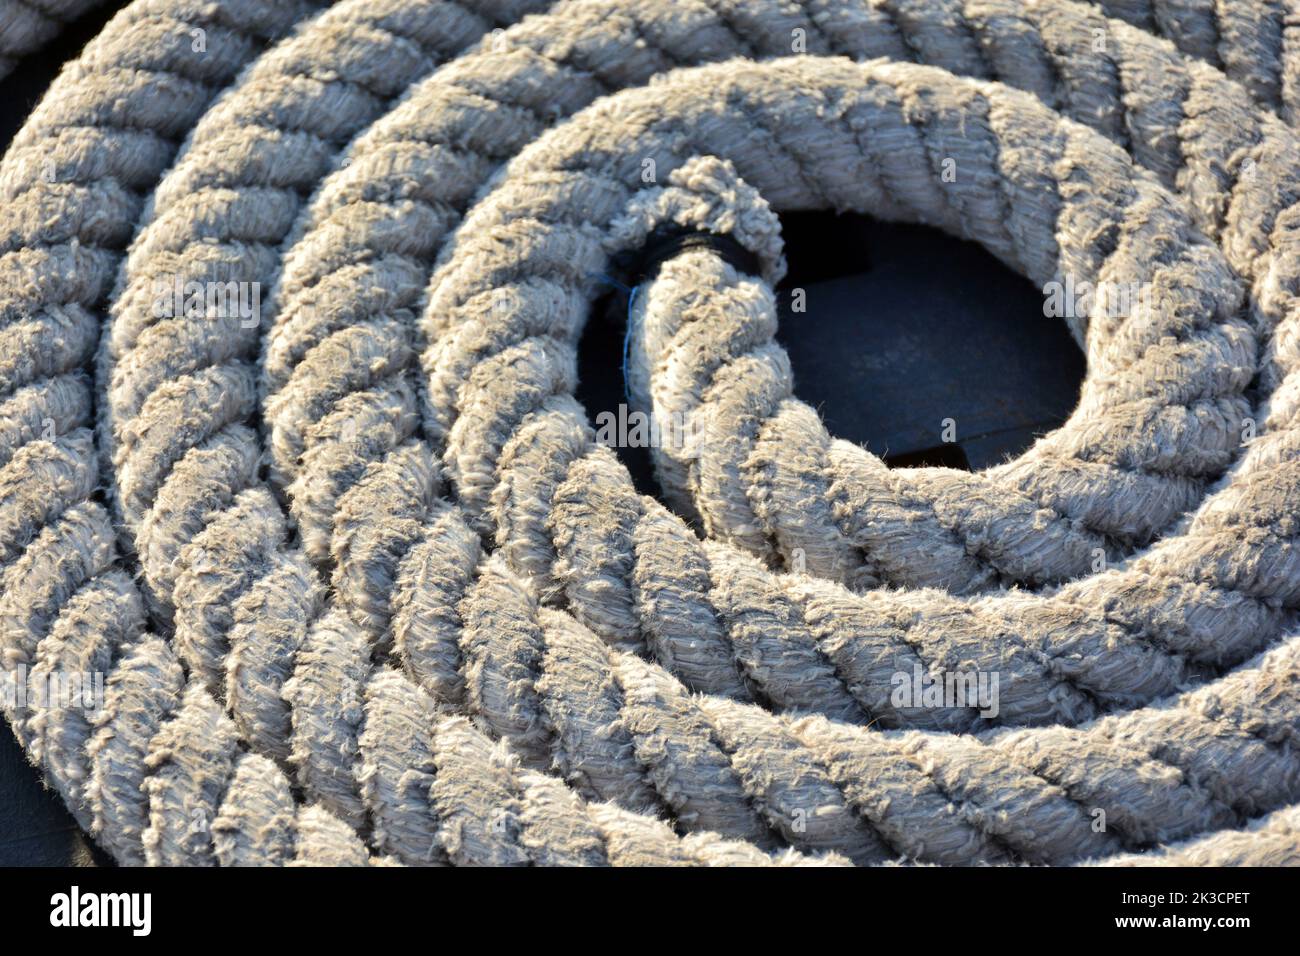 Detalle de cuerdas de barco enrolladas Stock Photo